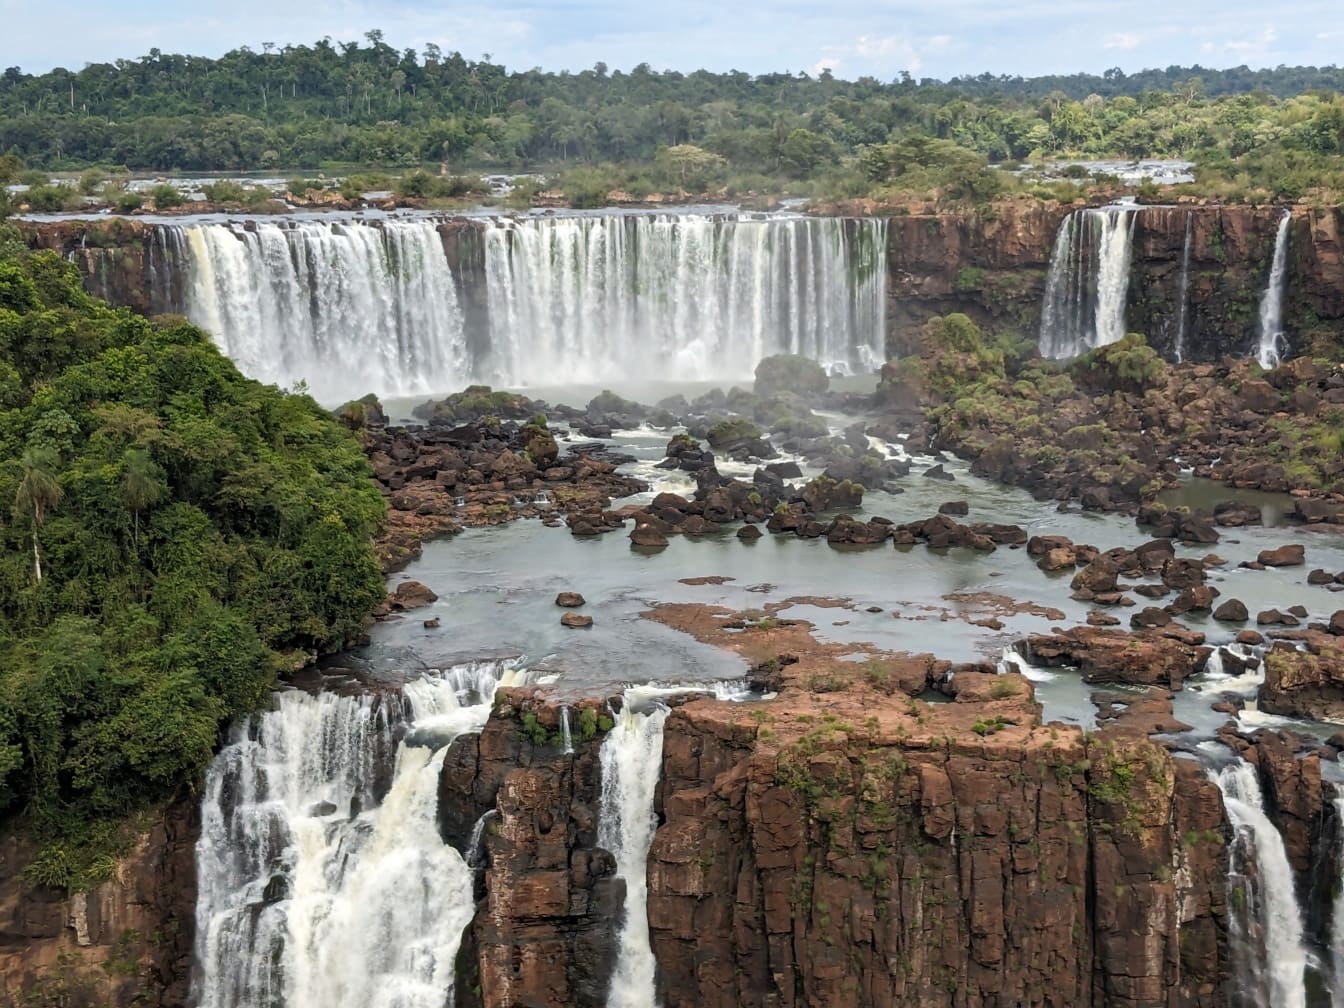 Nádherné panorama brazilské strany vodopádu na řece Iguazu, nedotčená divočina ve své kráse